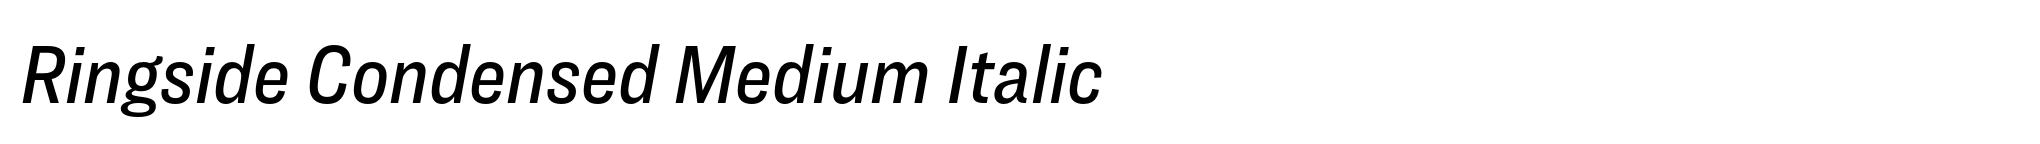 Ringside Condensed Medium Italic image